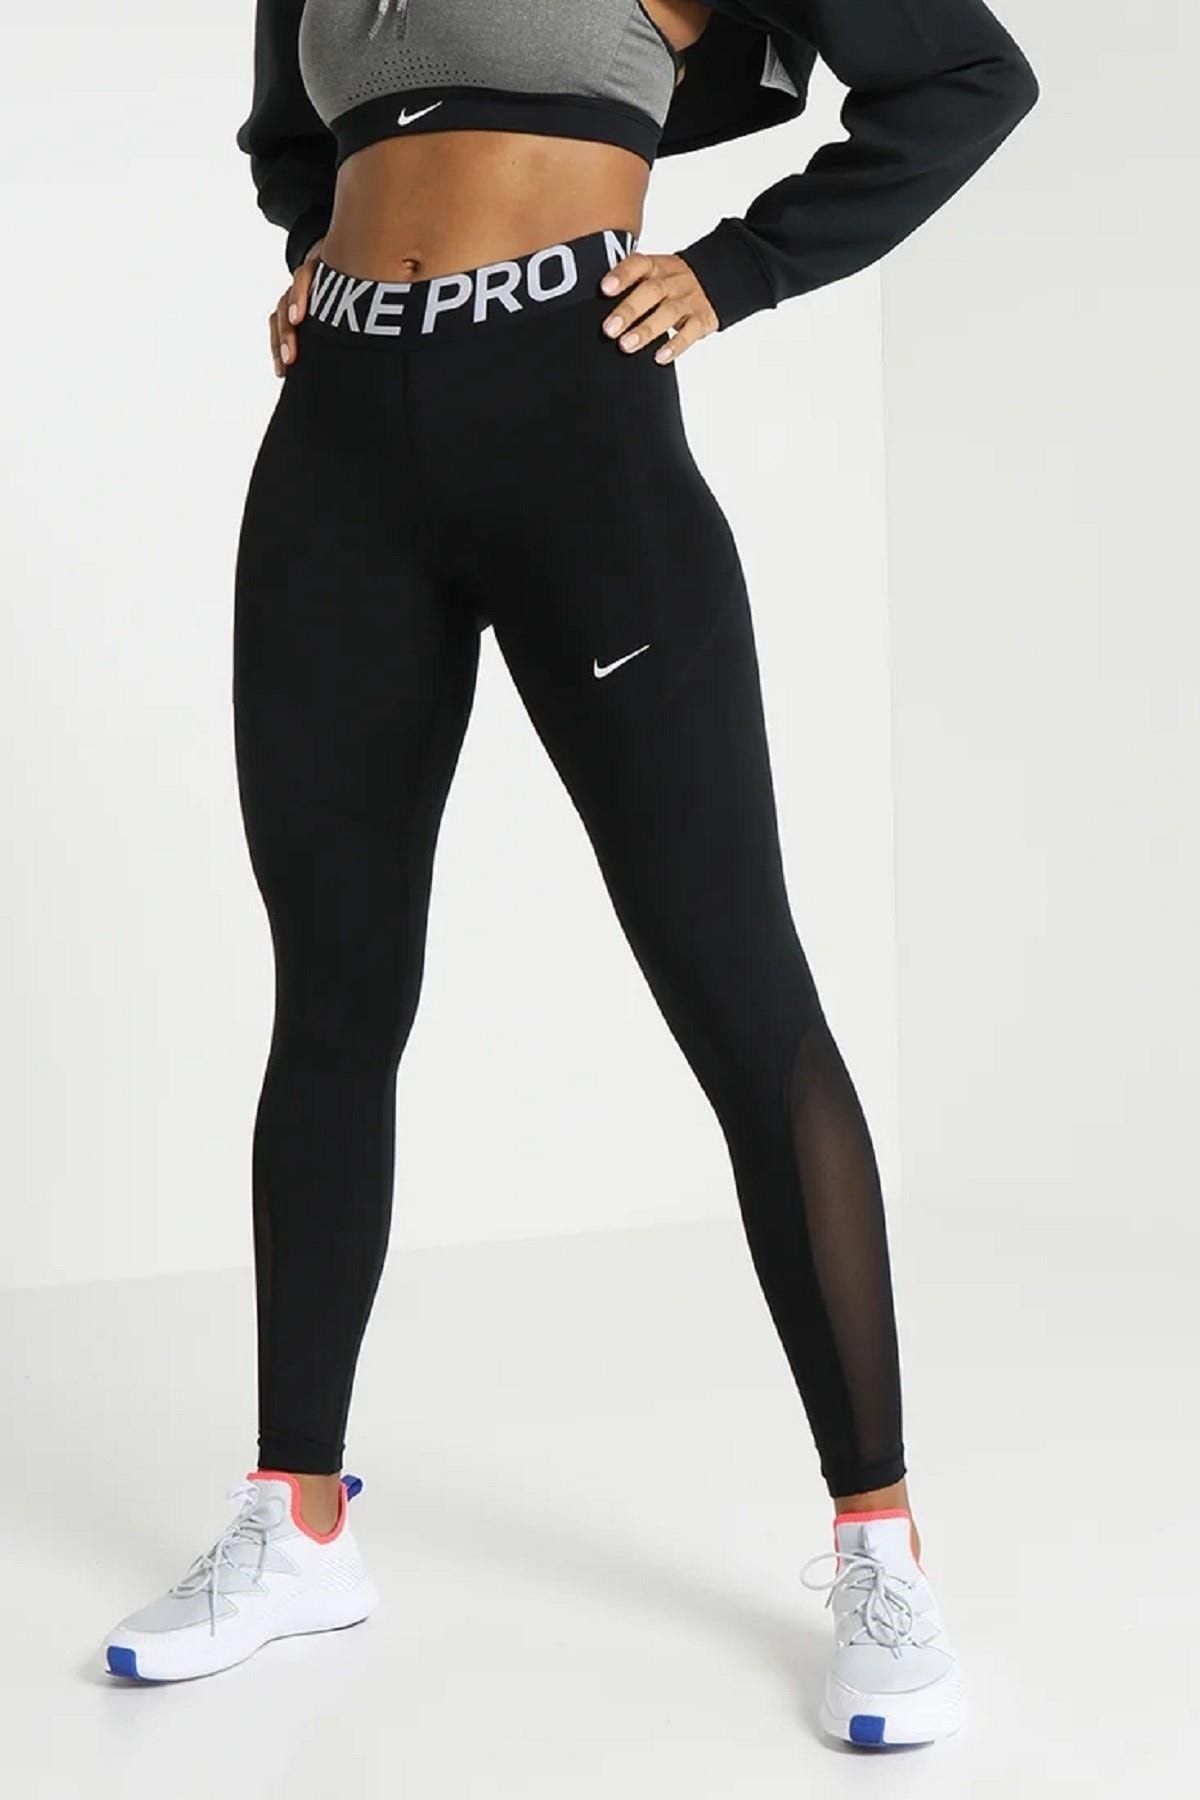 Nike Pro Erkek Tayt-Siyah-BV5641-010 Fiyatı, Yorumları - Trendyol